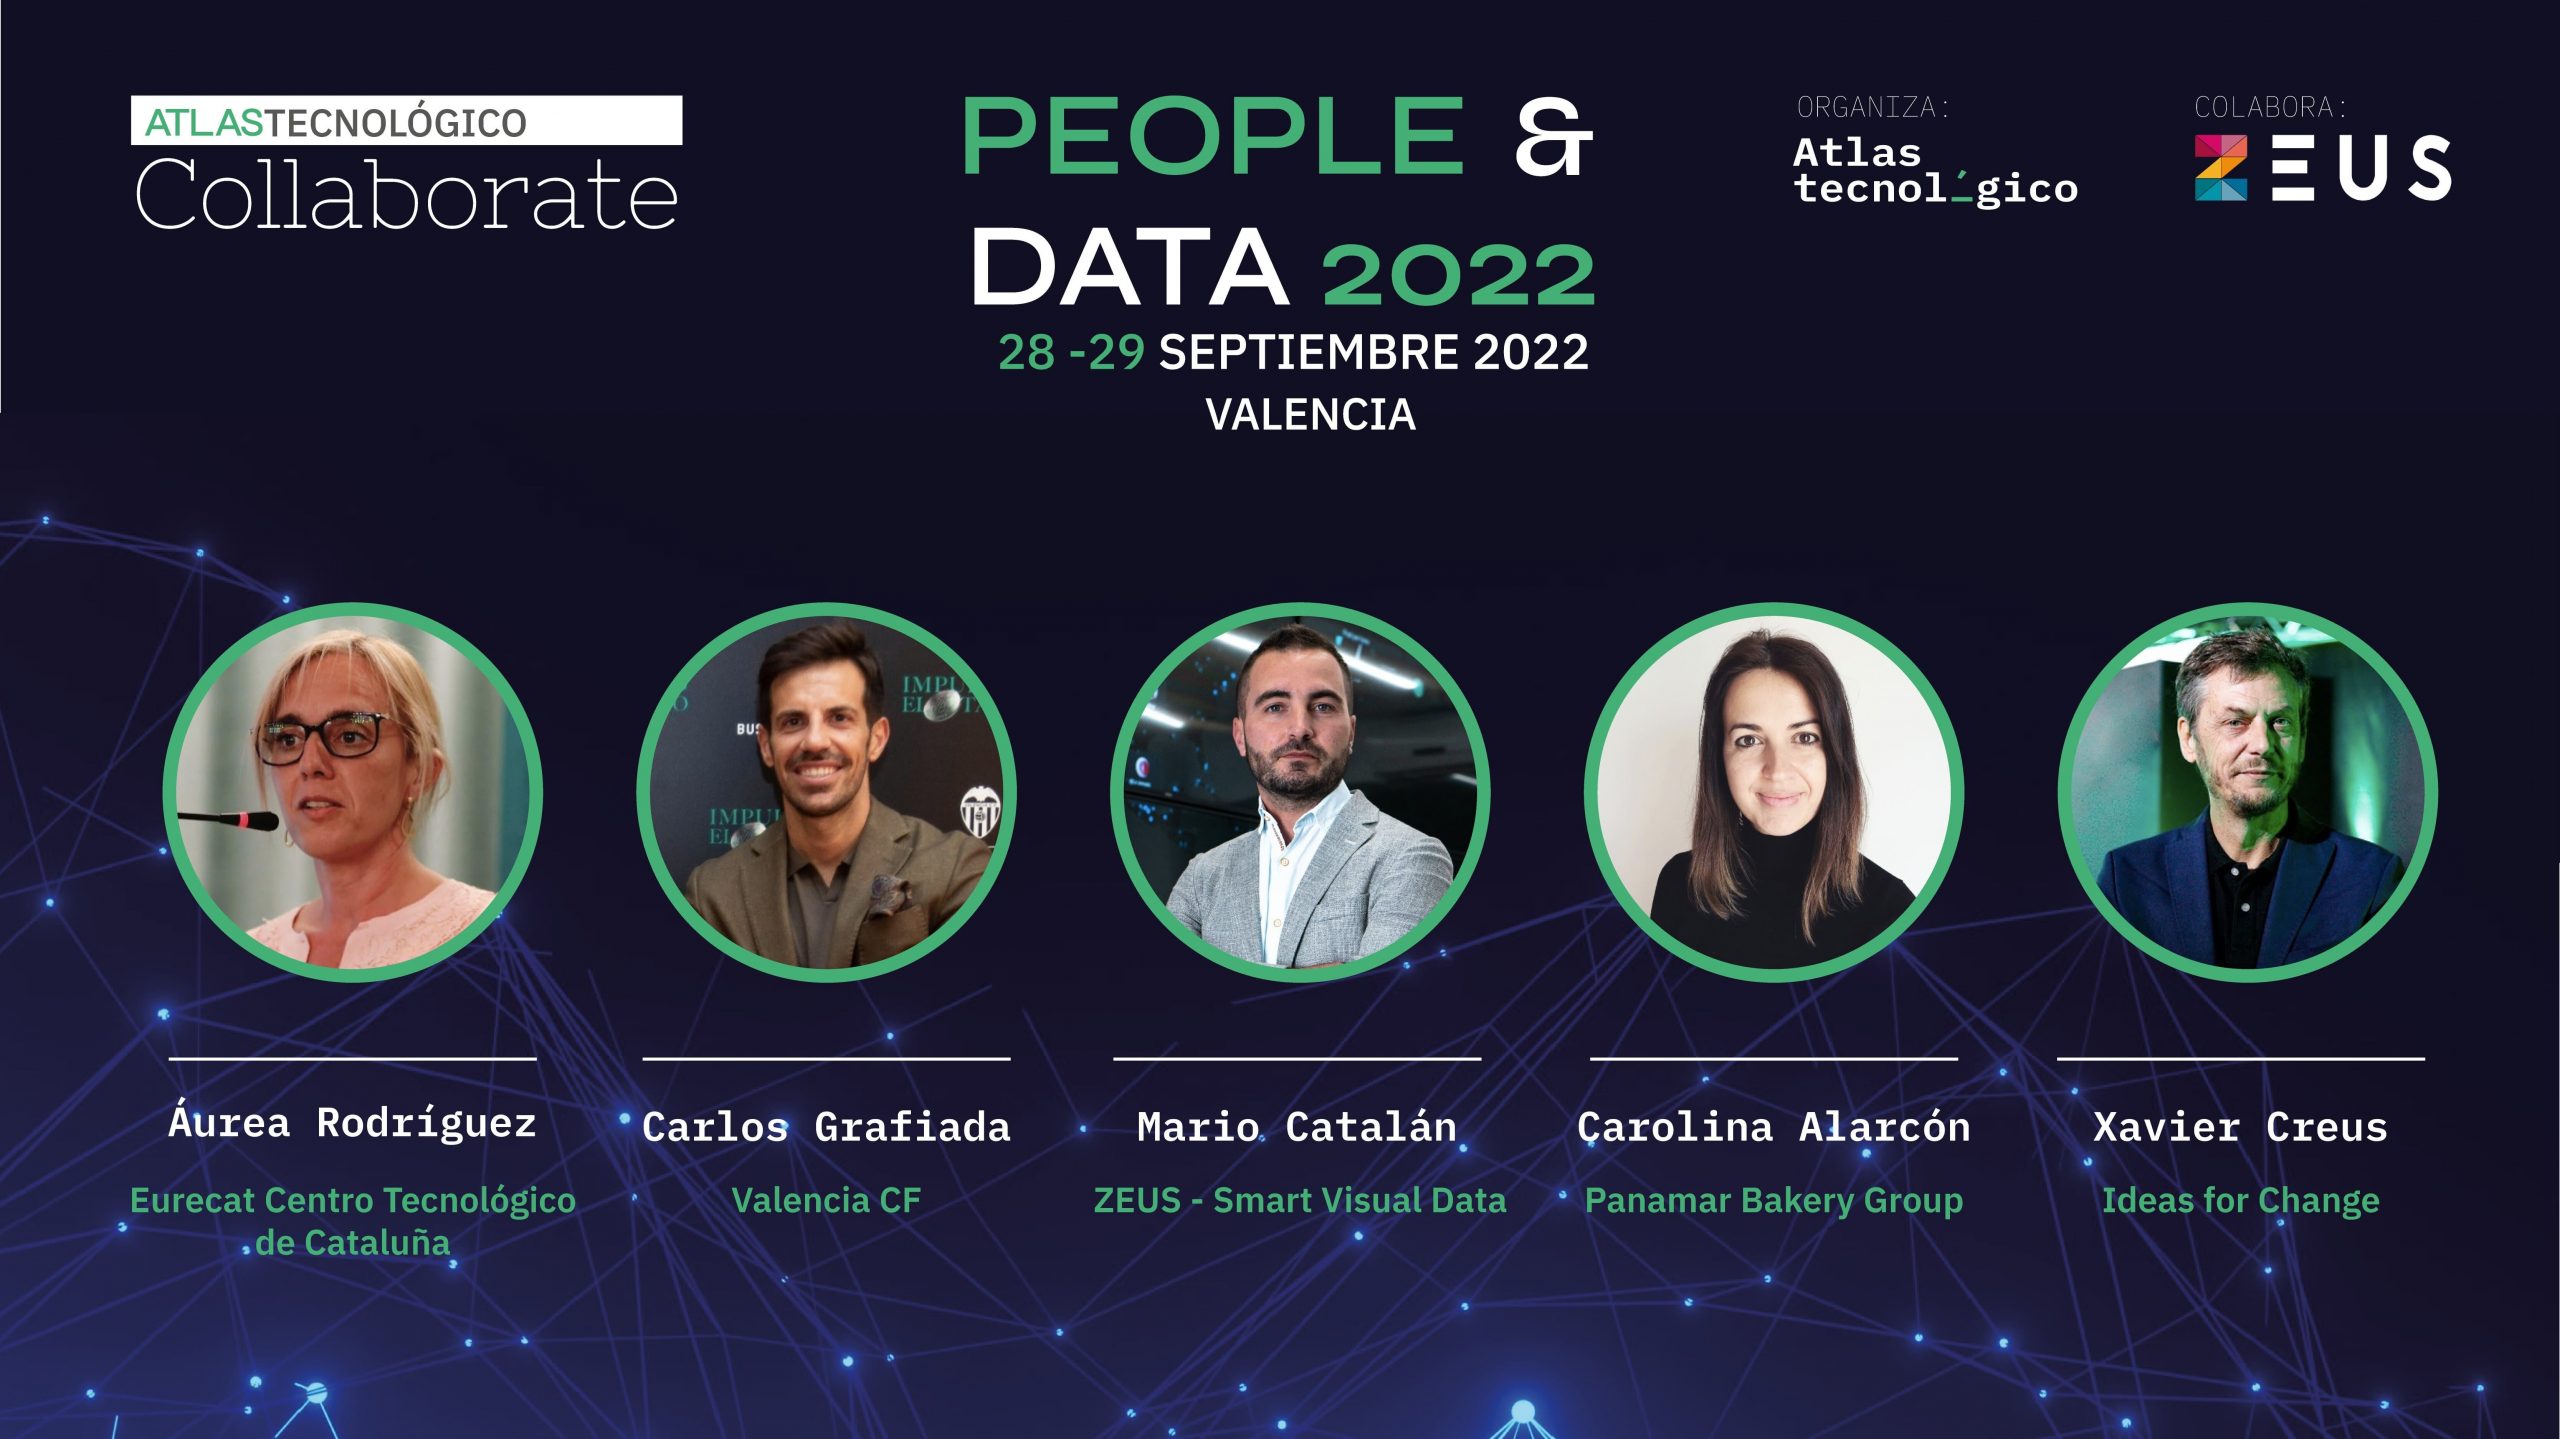 El Valencia CF, ZEUS, Eurecat, Ideas for Change, y Panamar se suman al Collaborate People & Data